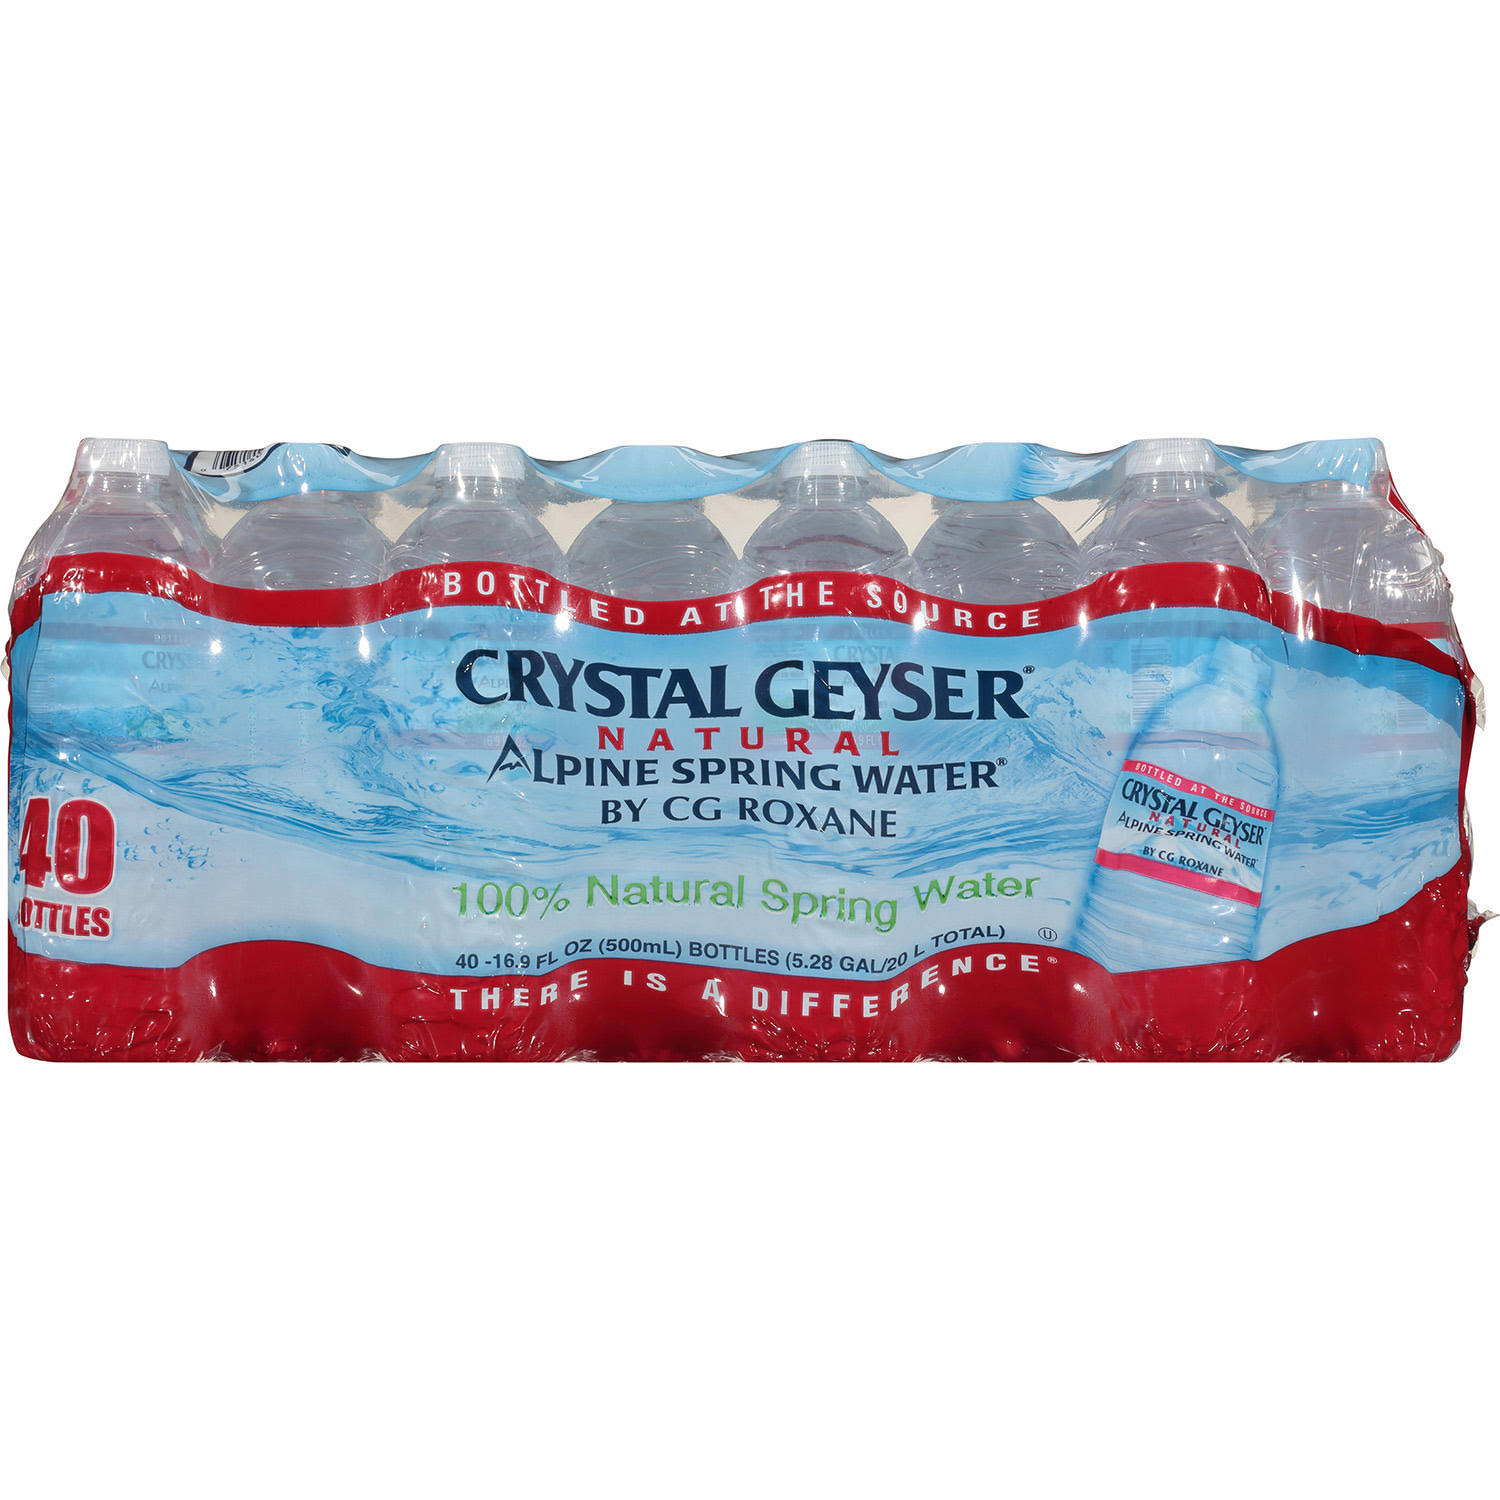 Crystal Geyser Natural Alpine Spring Water - 40 pack, 16.9 fl oz bottles